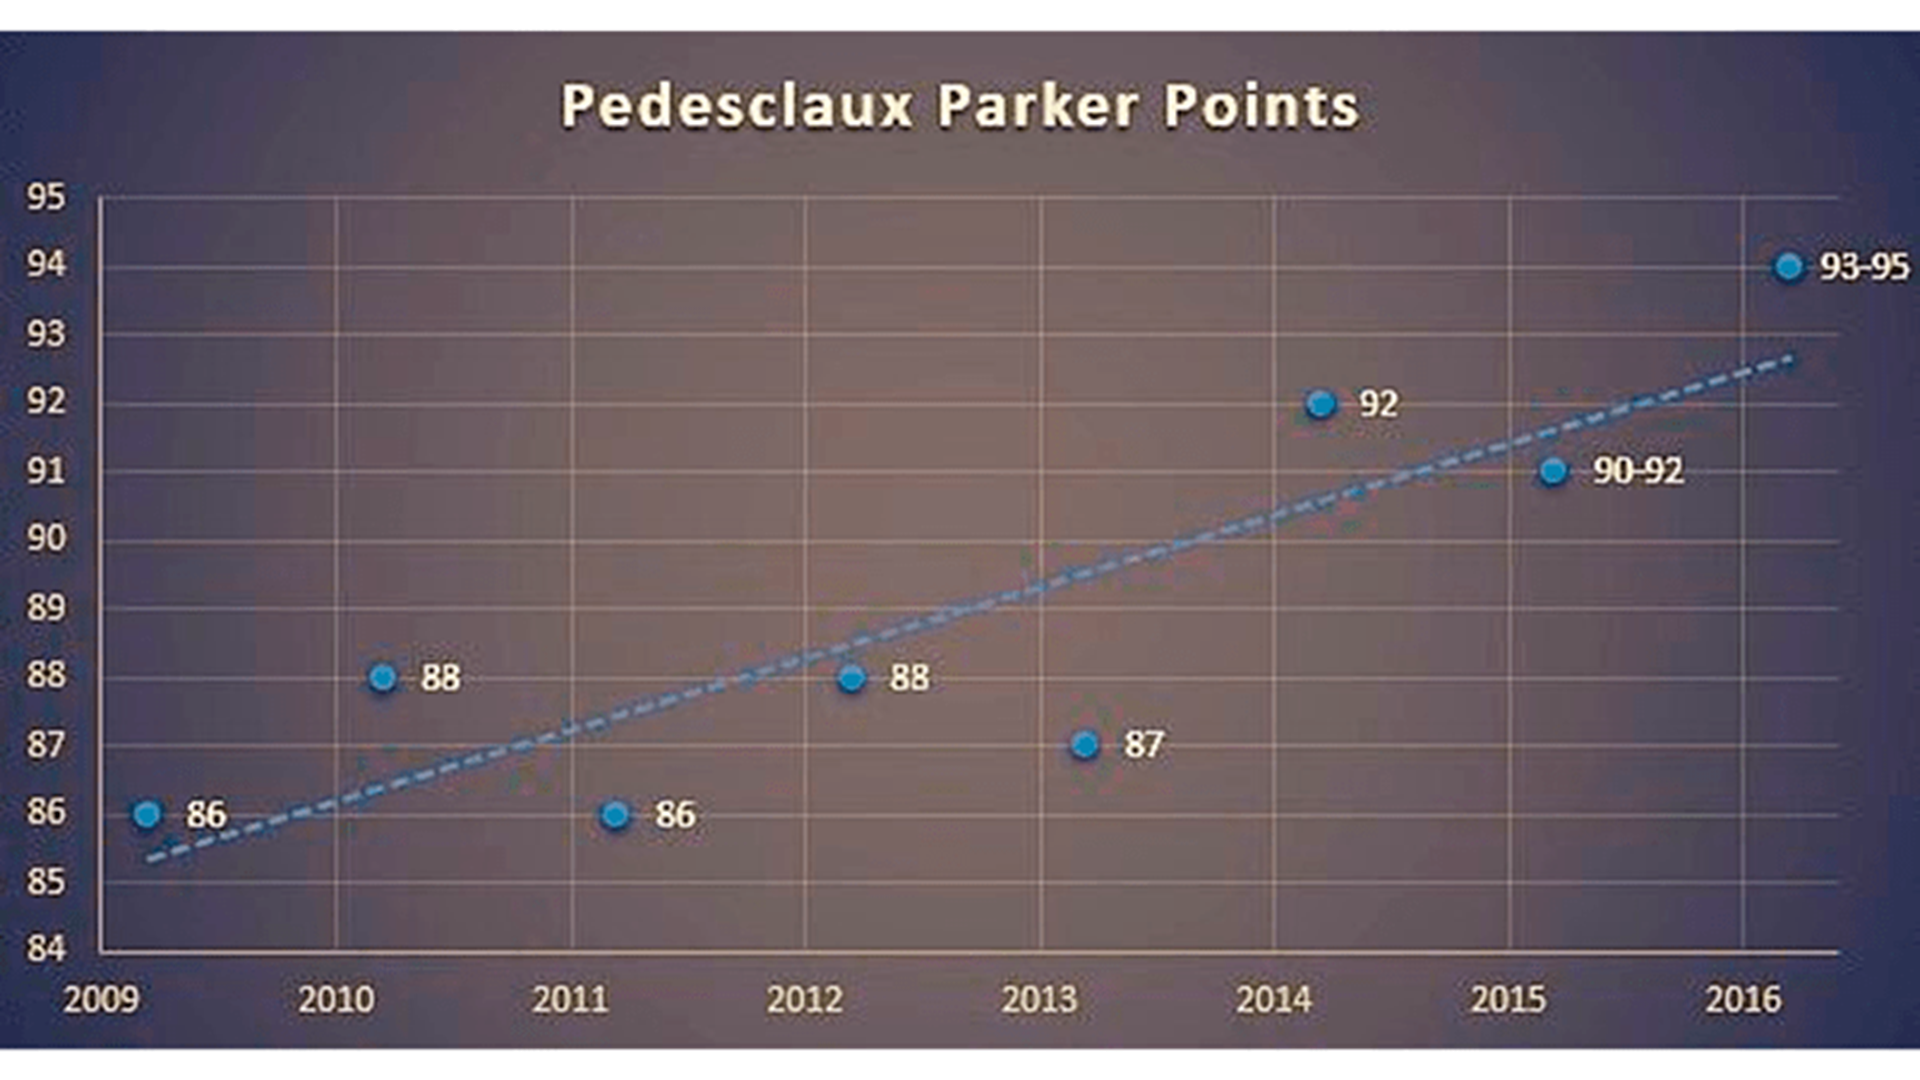 Pedesclaux Robert Parker Scores